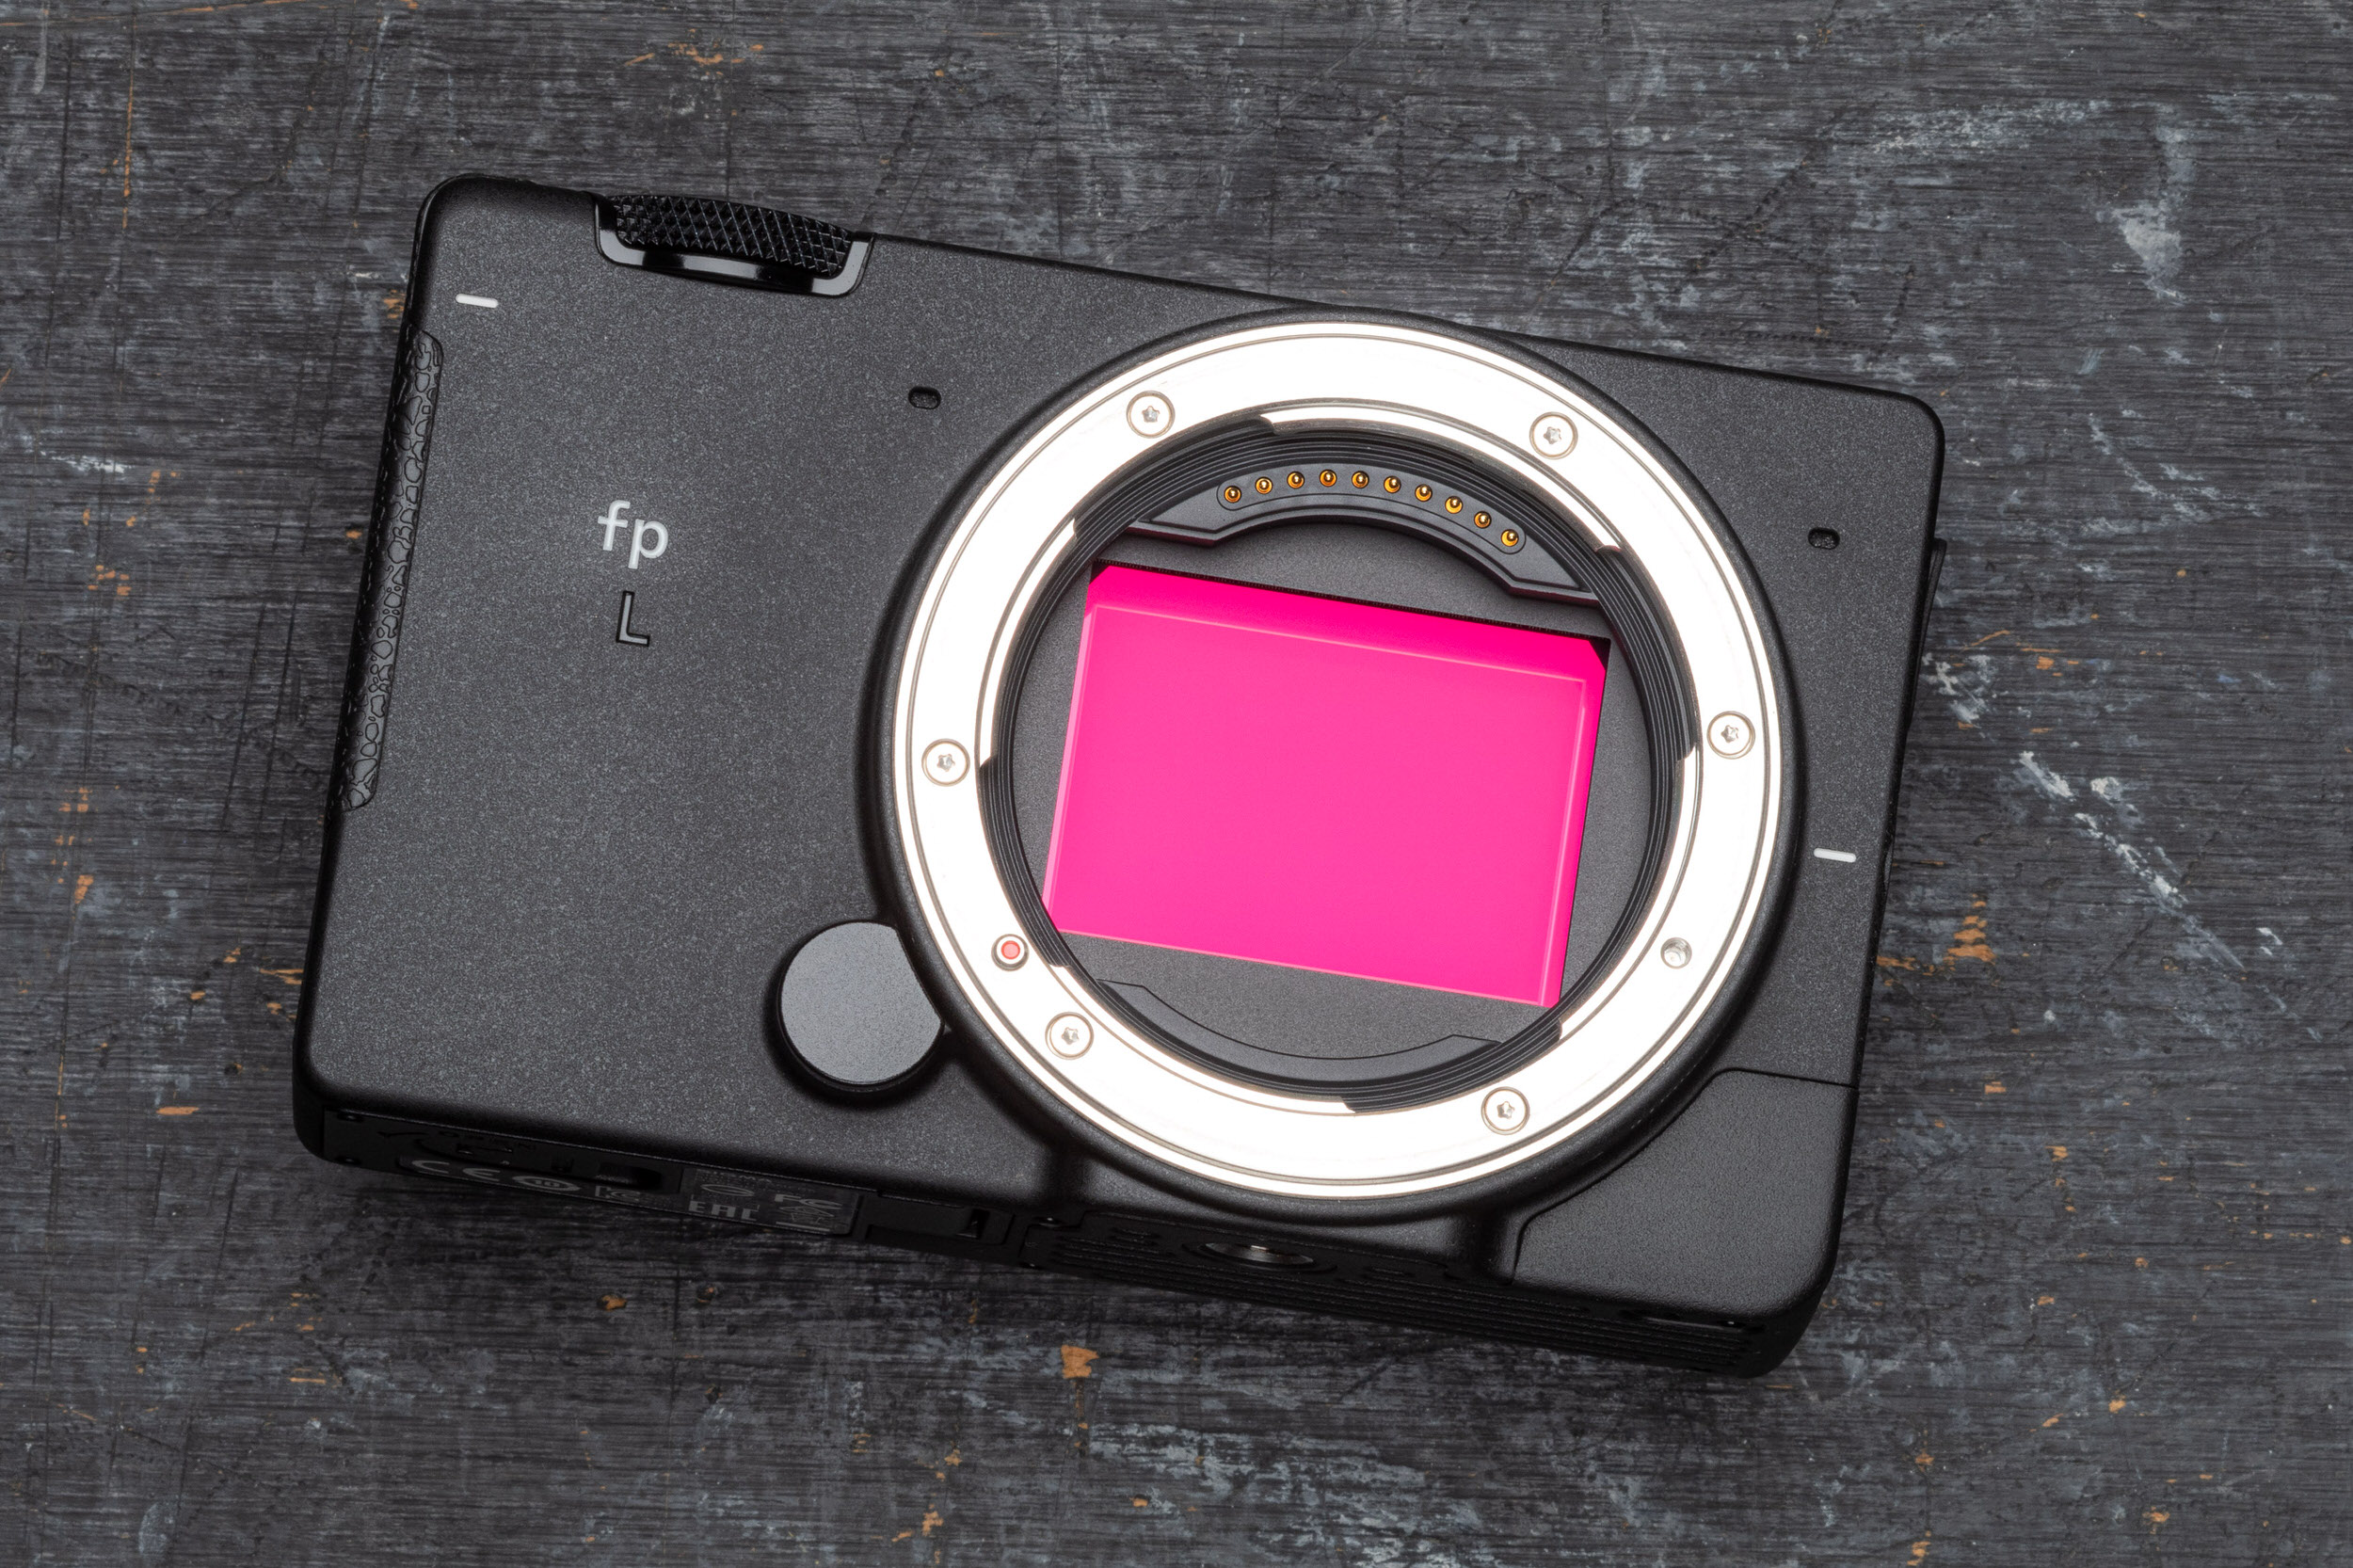 Sigma ra mắt máy ảnh fp L 61MP mới thêm độ phân giải và thêm tuỳ chọn EVF cho thiết bị